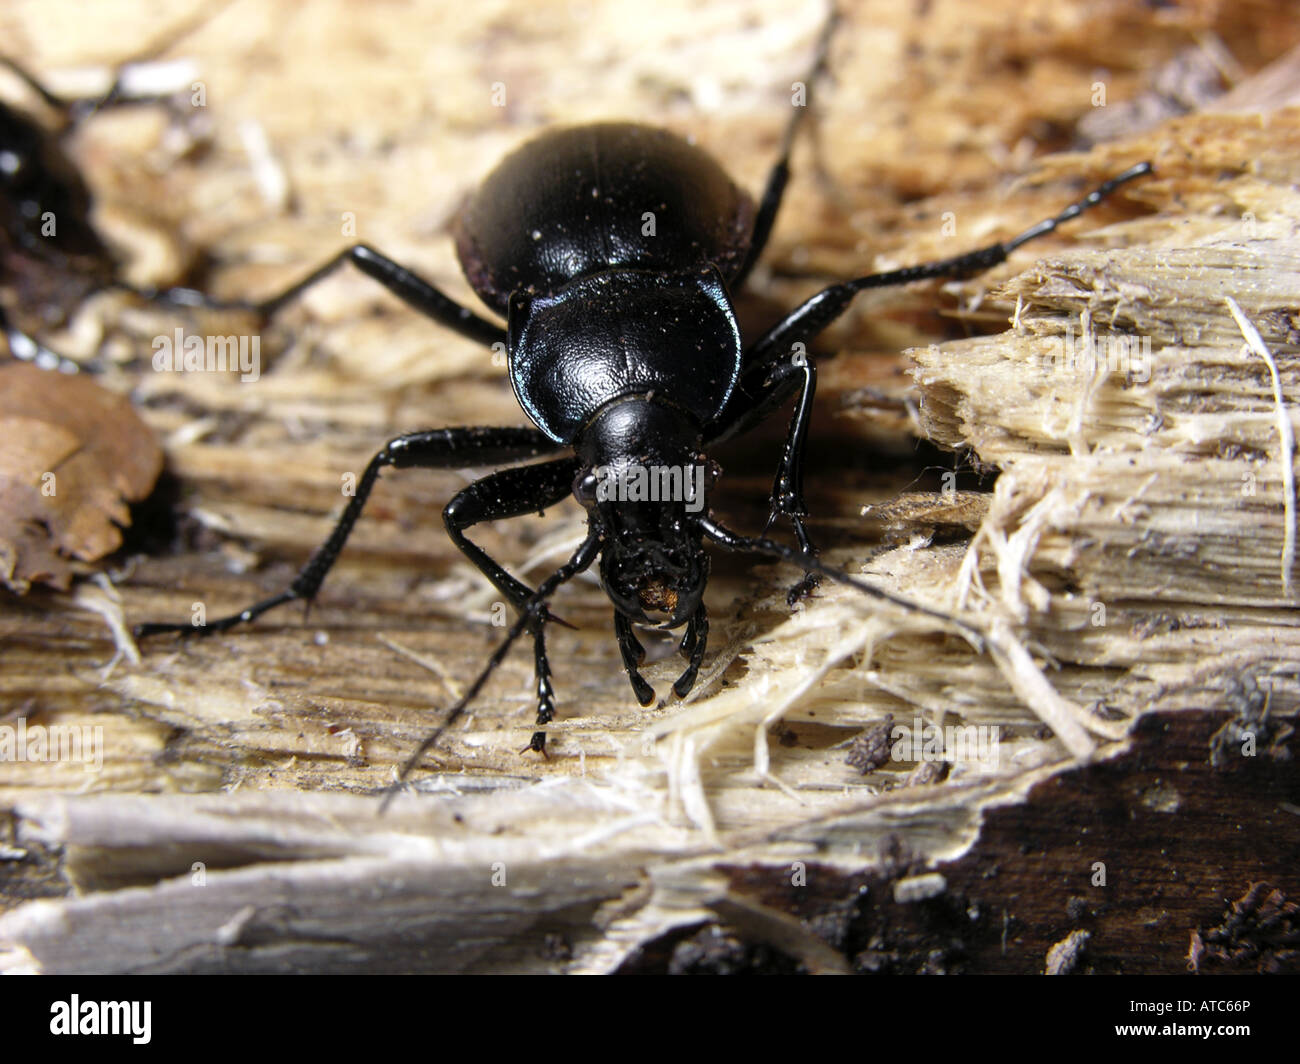 Massa viola beetle (Carabus tendente al violaceo), camminando su legno morto Foto Stock